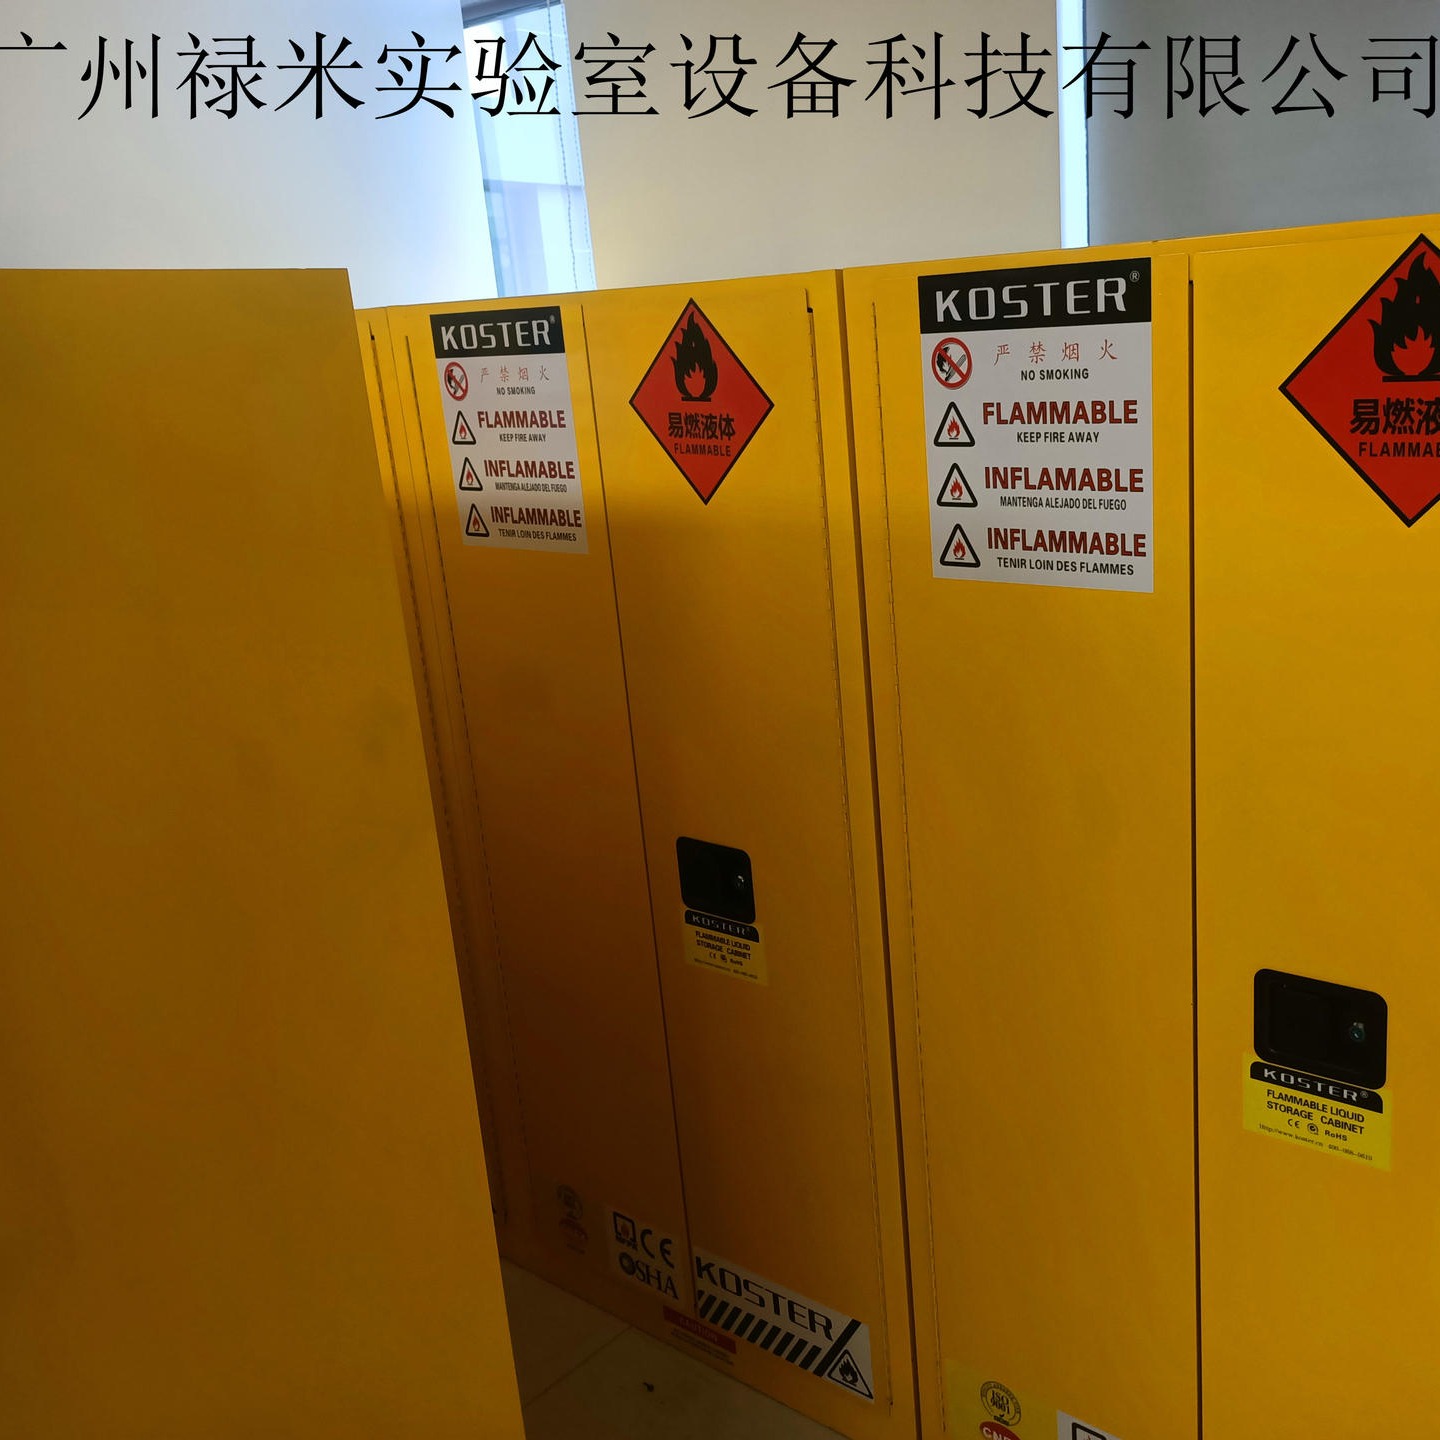 禄米实验室   合肥全钢安全柜  济南带报警全钢安全柜  支持非标尺寸定制LUMI-AQG7172S